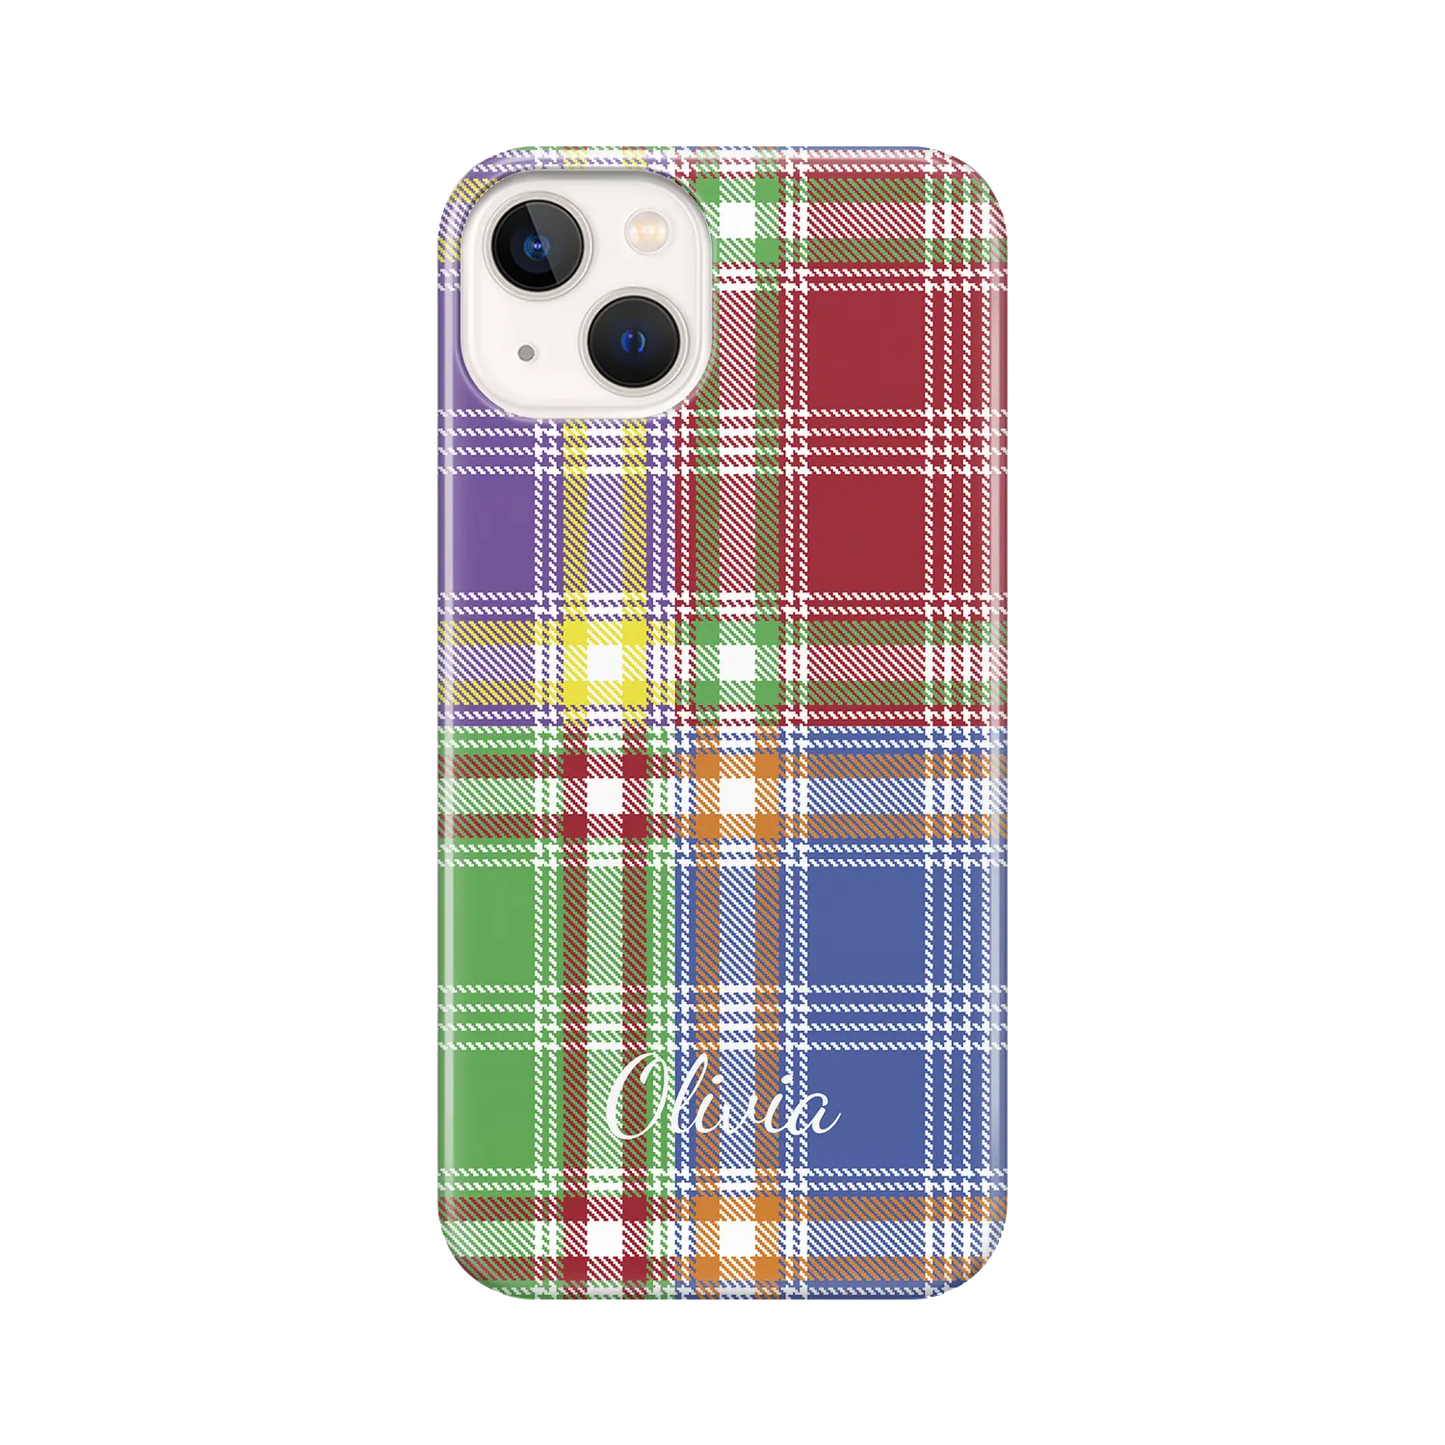 Plaid & Simple - Custom iPhone Case